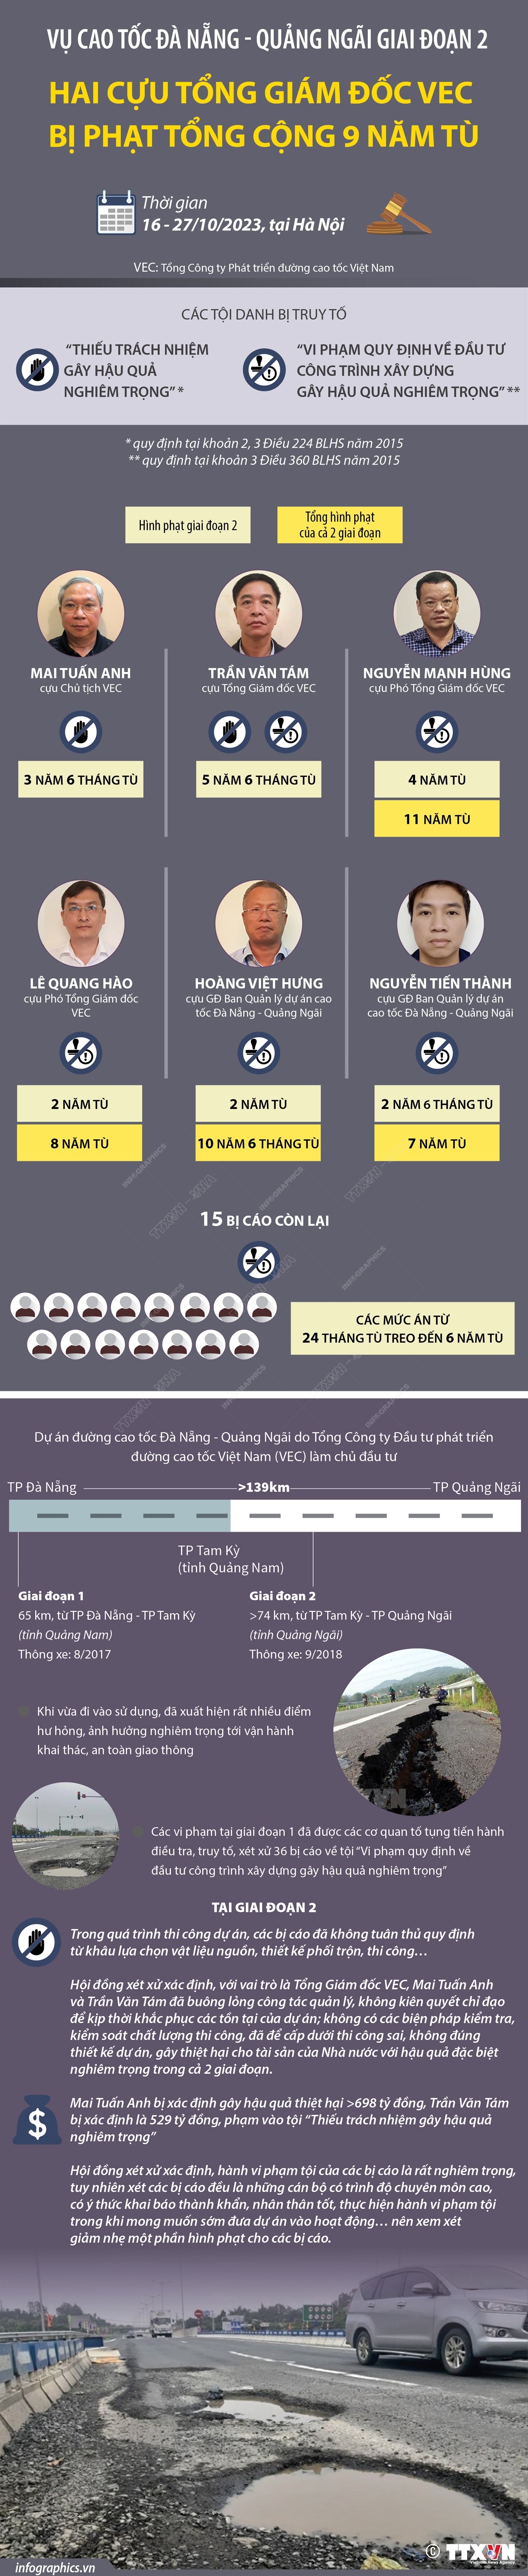 [Infographics] Chi tiết hình phạt trong vụ Cao tốc Đà Nẵng-Quảng Ngãi